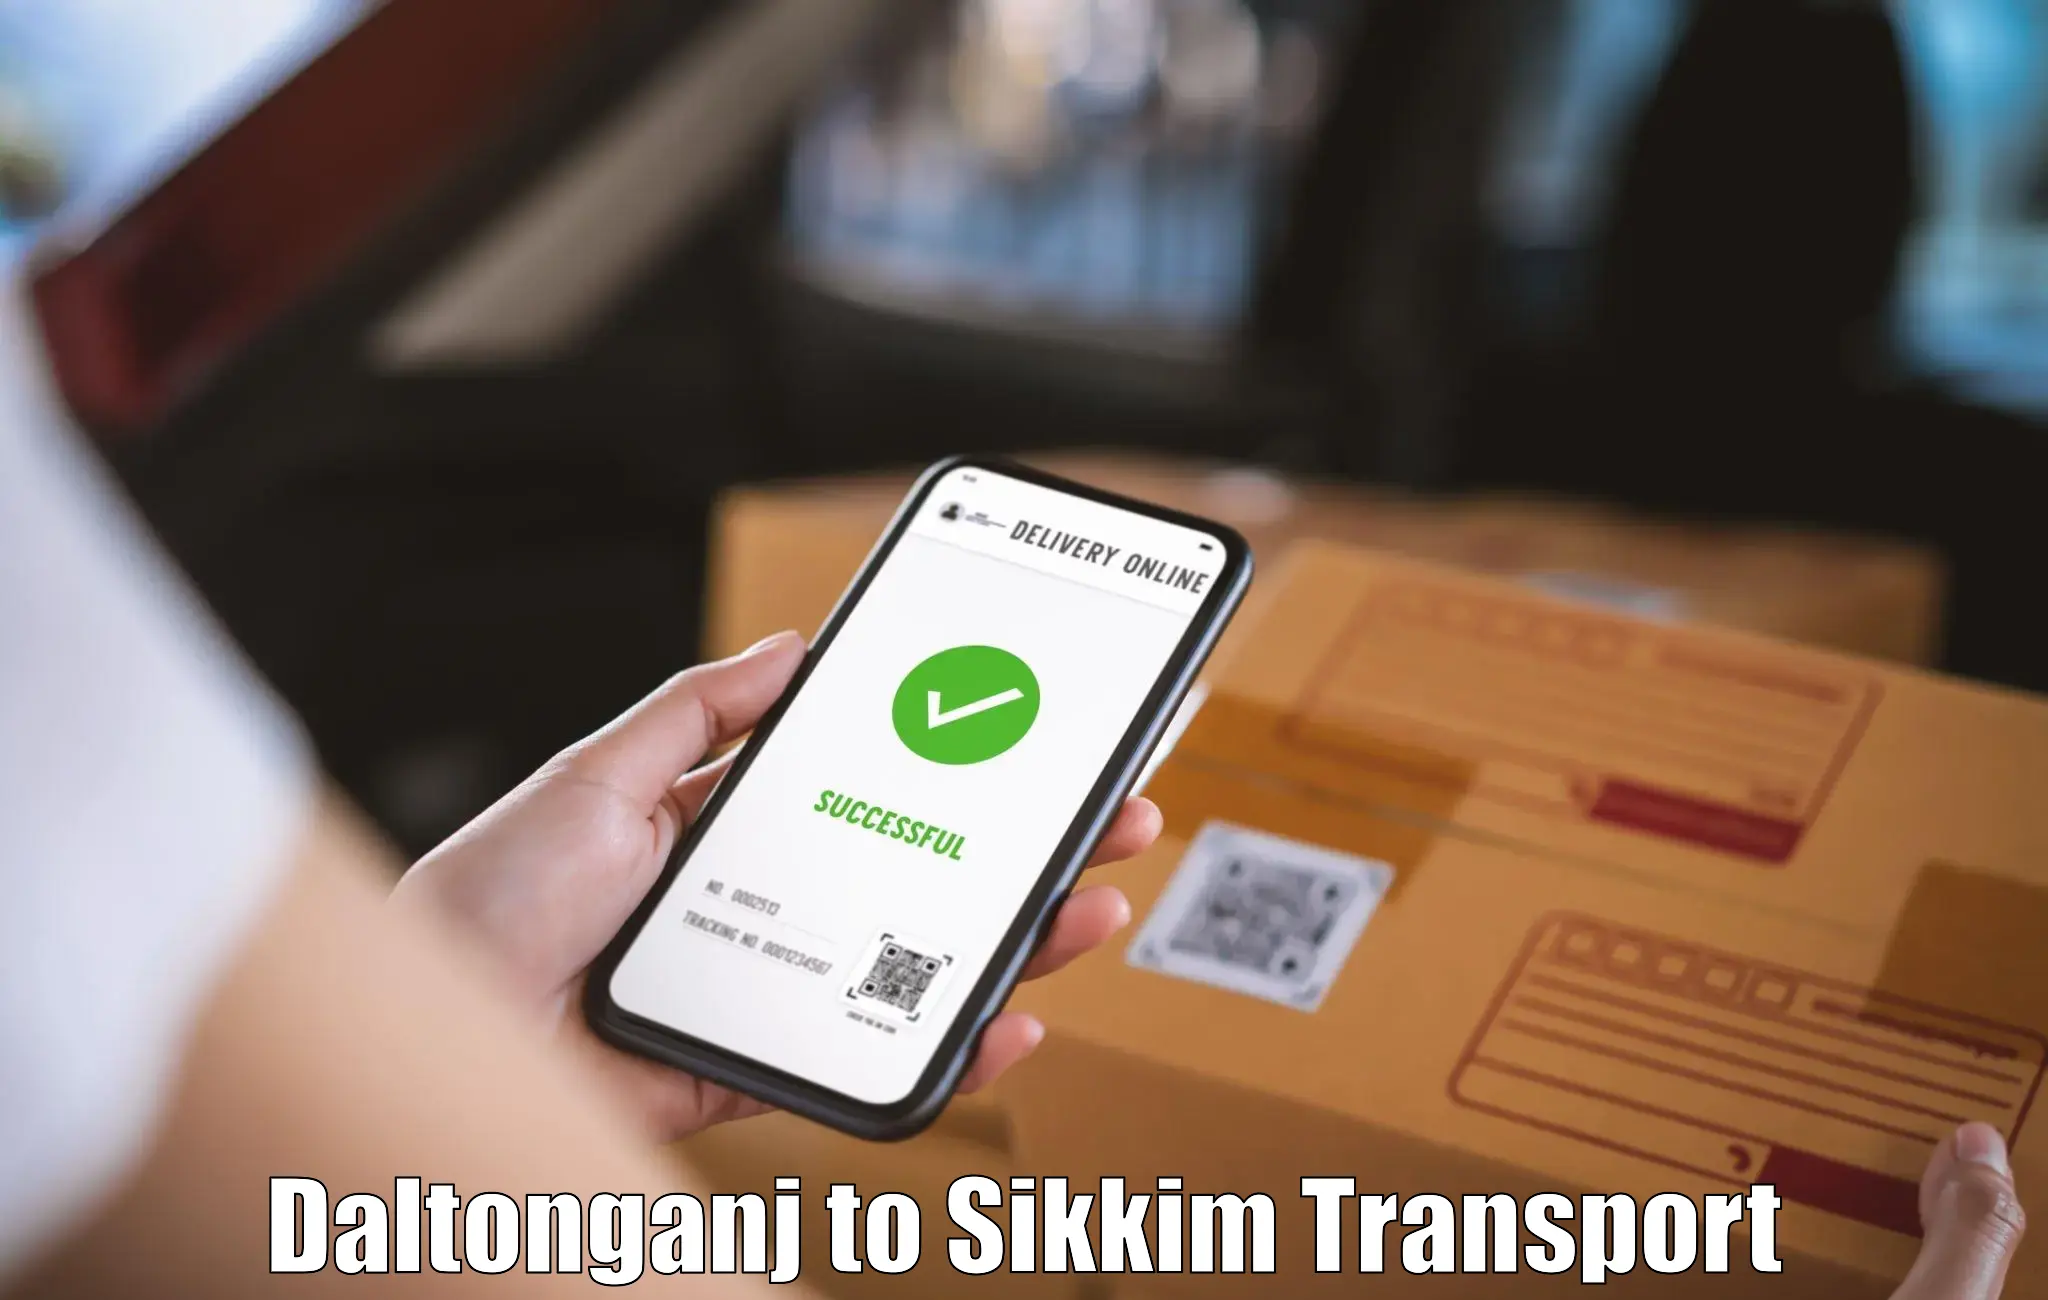 Online transport booking Daltonganj to Singtam